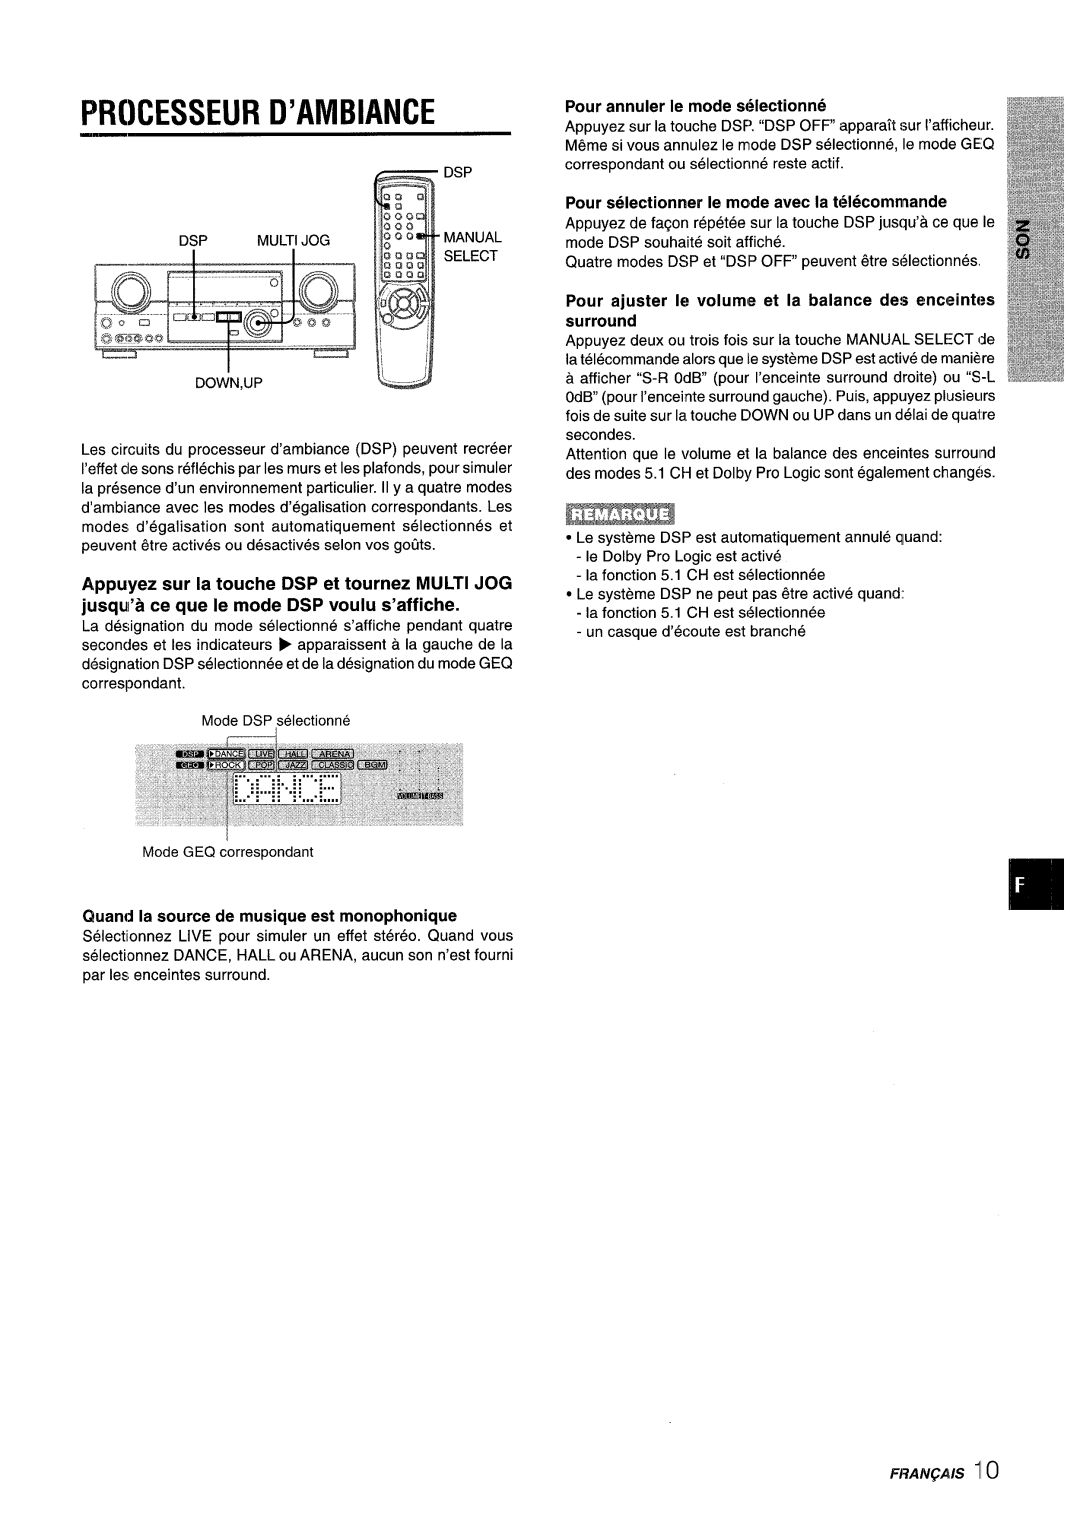 Aiwa AV-D35 manual Prcesseur D’Ambiance, Quand la source de musique est monophonique, Pour annuler Ie mode s61ectionne 